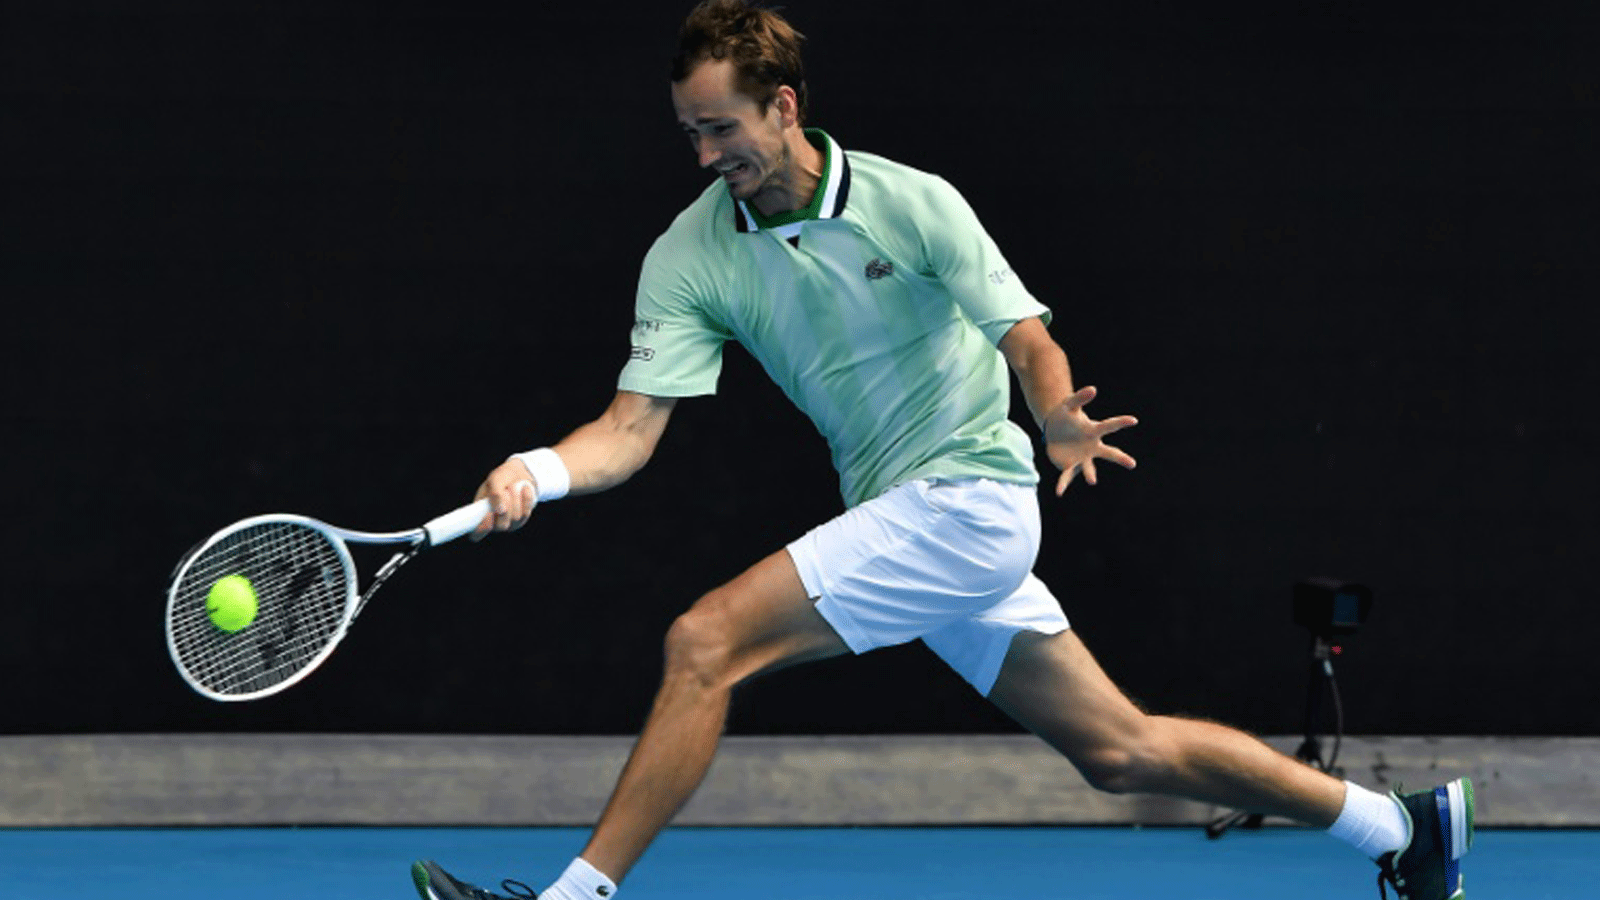 الروسي دانييل مدفيديف خلال مباراته ضد السويسري هنري لاكسونن في الدور الأول لبطولة أستراليا المفتوحة في كرة المضرب في 18 كانون الثاني/يناير 2022.